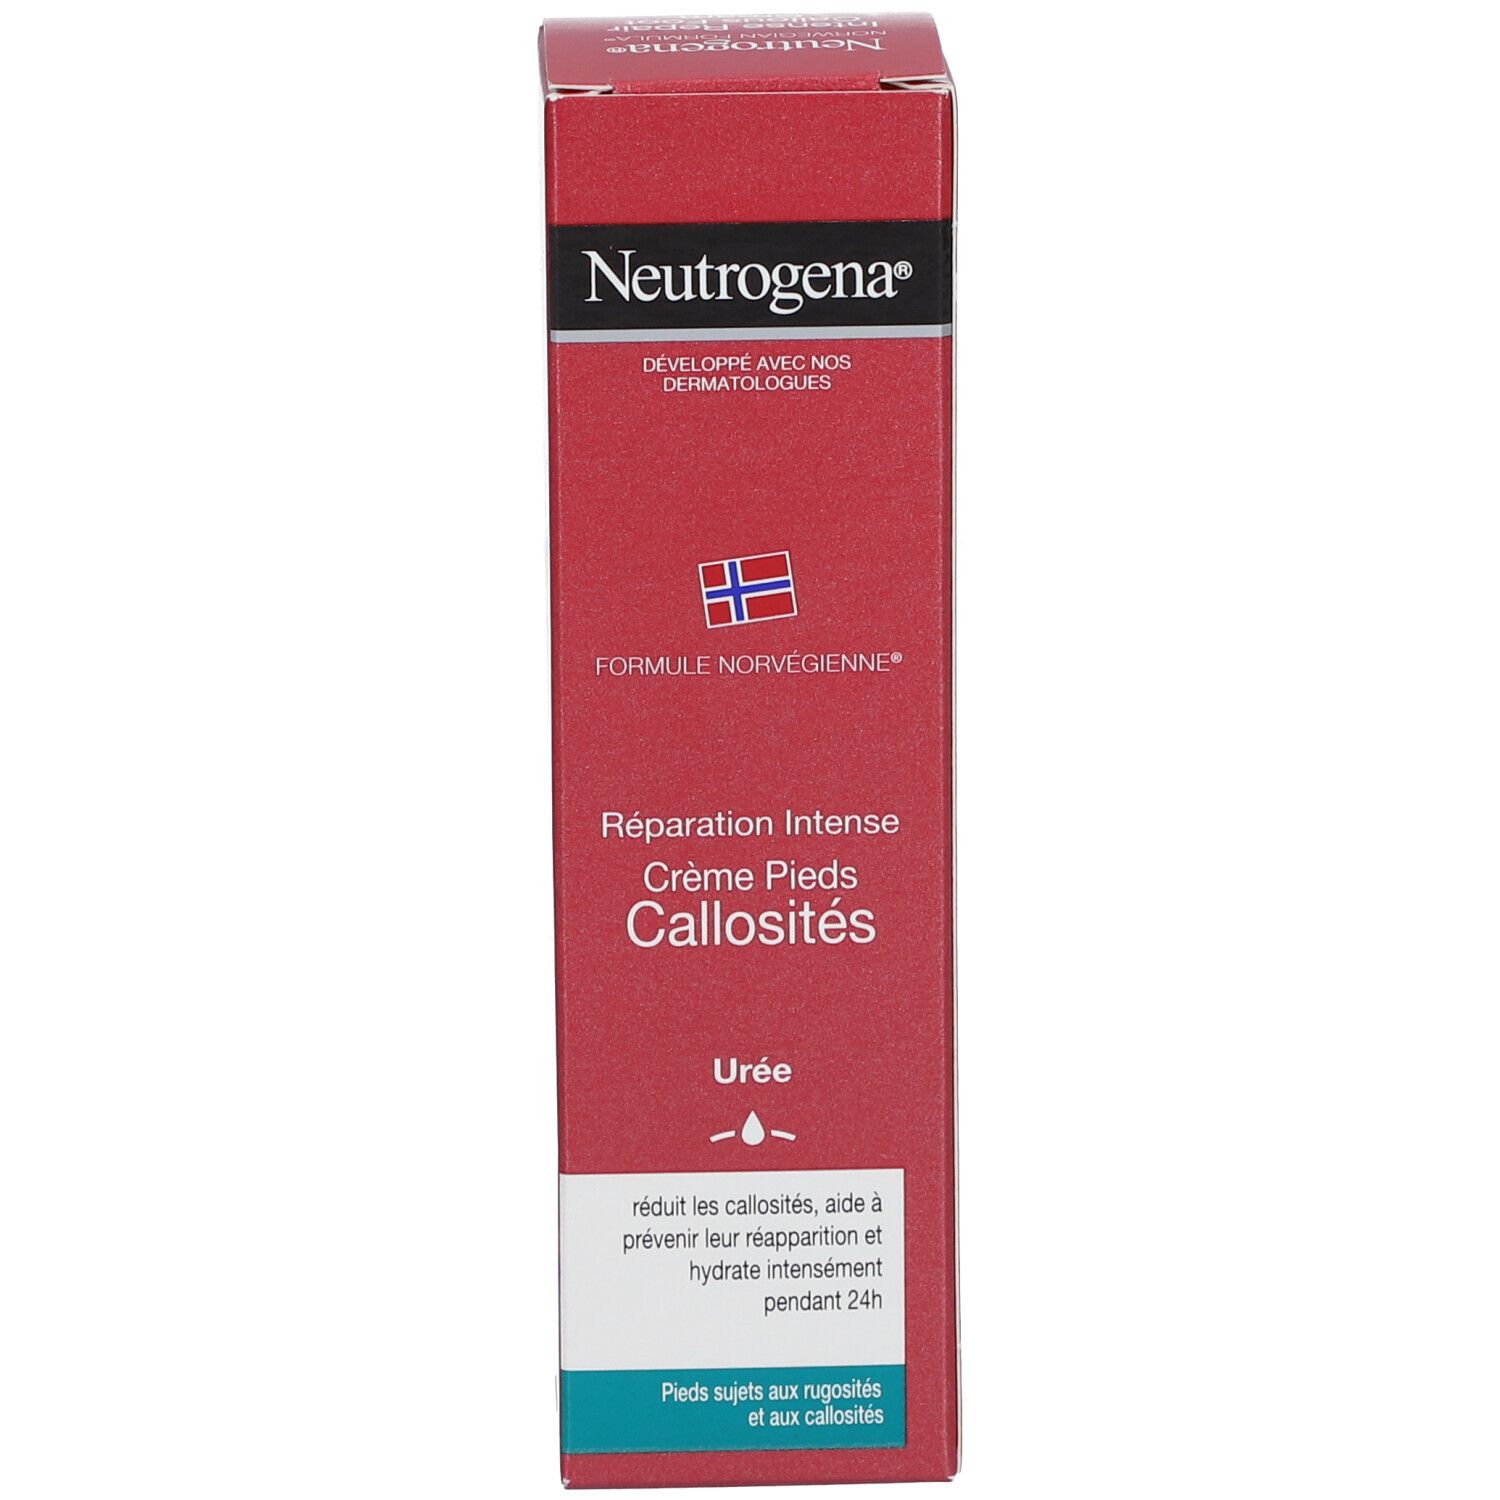 Neutrogena, Formule Norvégienne, Crème Pieds Callosités 50 ml